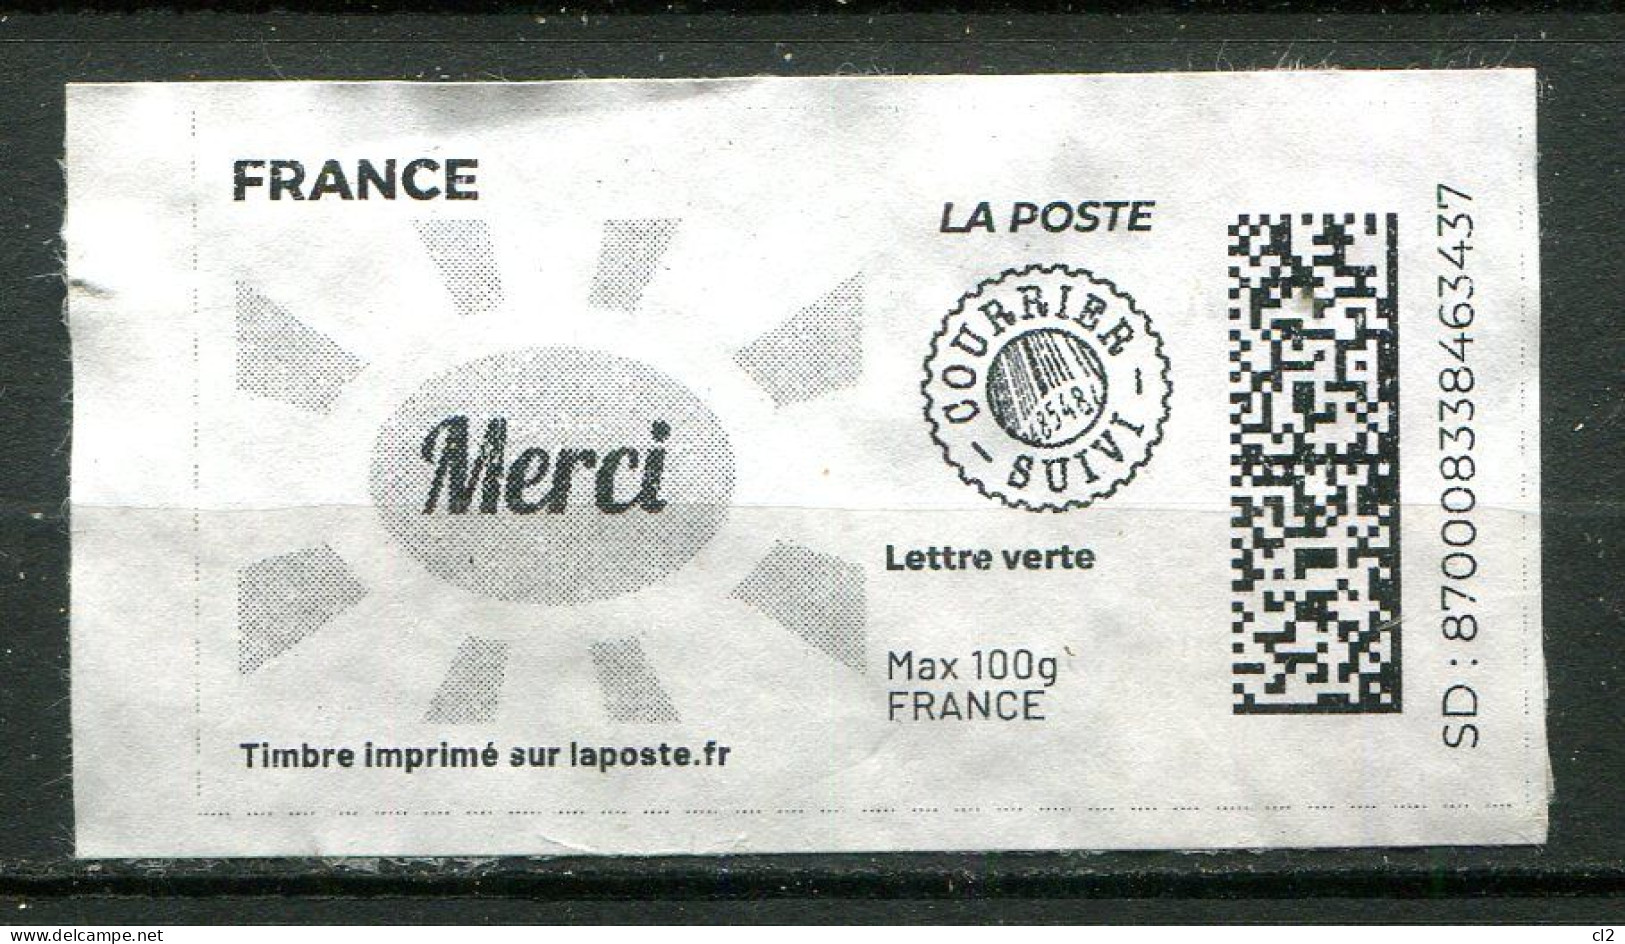 FRANCE - Timbre Imprimé Sur Laposte.fr - Lettre Verte - Courrier Suivi - Max 100g - MERCI - Timbres à Imprimer (Montimbrenligne)